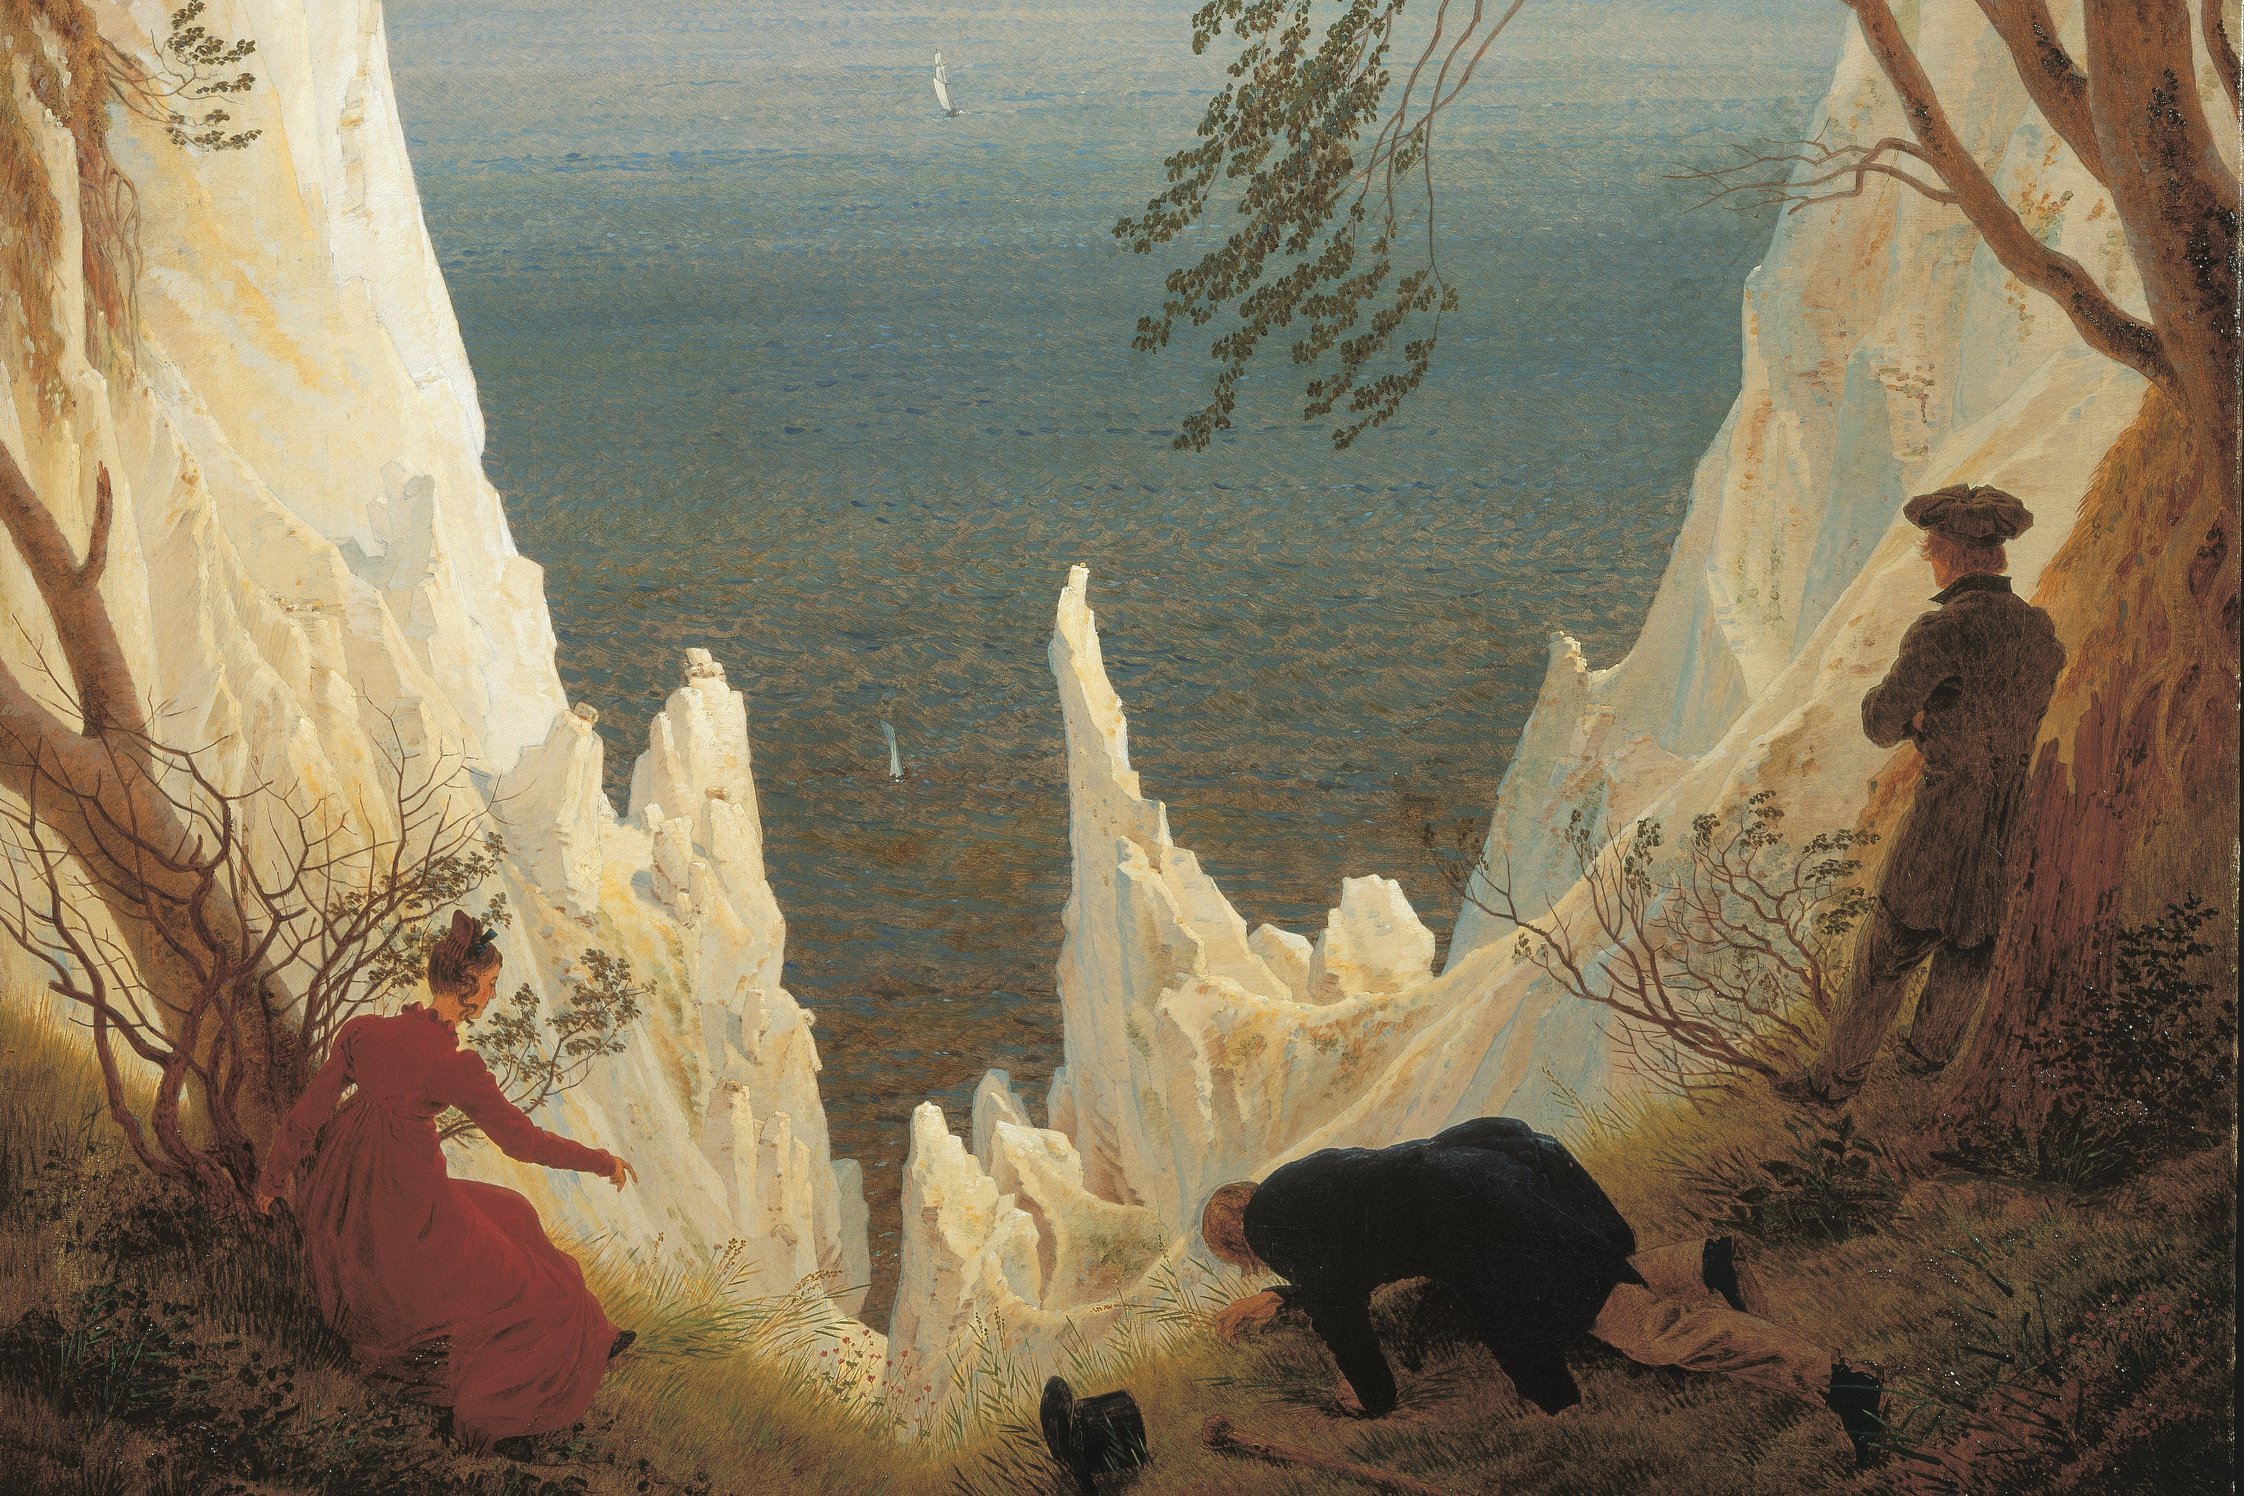 Gemälde mit drei Figuren im Vordergrund, eine Frau im roten Kleid und zwei Männer, einer davon stehend, einer knieend. Dahinter steil aufragende Kreidefelsen vor See-Hintergrund.